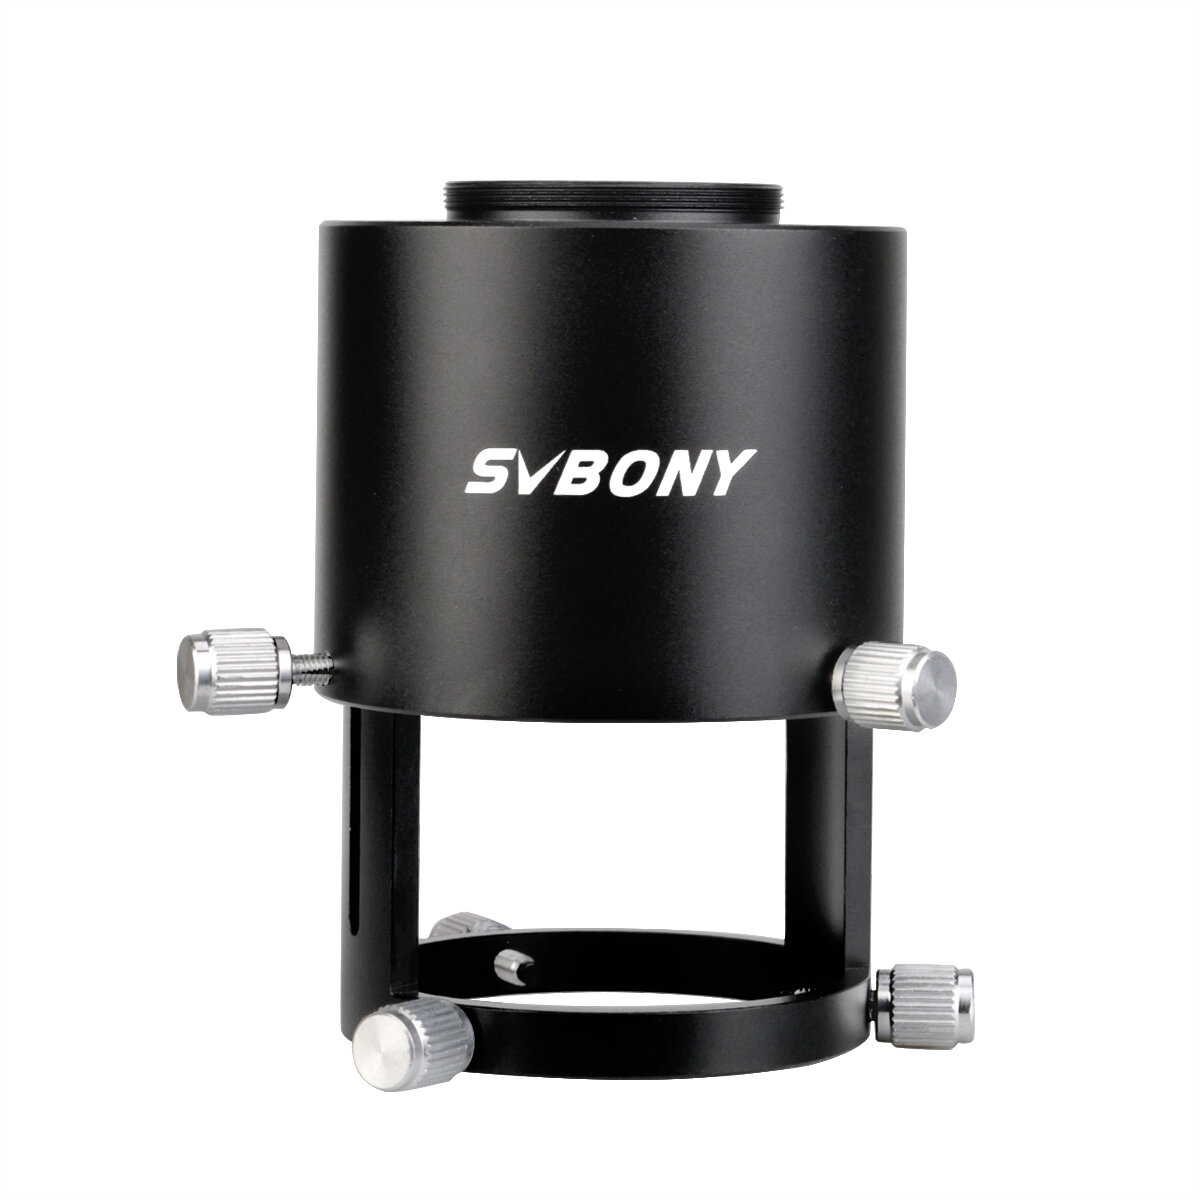 

Зрительная труба SVBONY камера Адаптер, удлиняемый, два Трубка Конструкция подходит для зрительной трубы Внешний диаметр